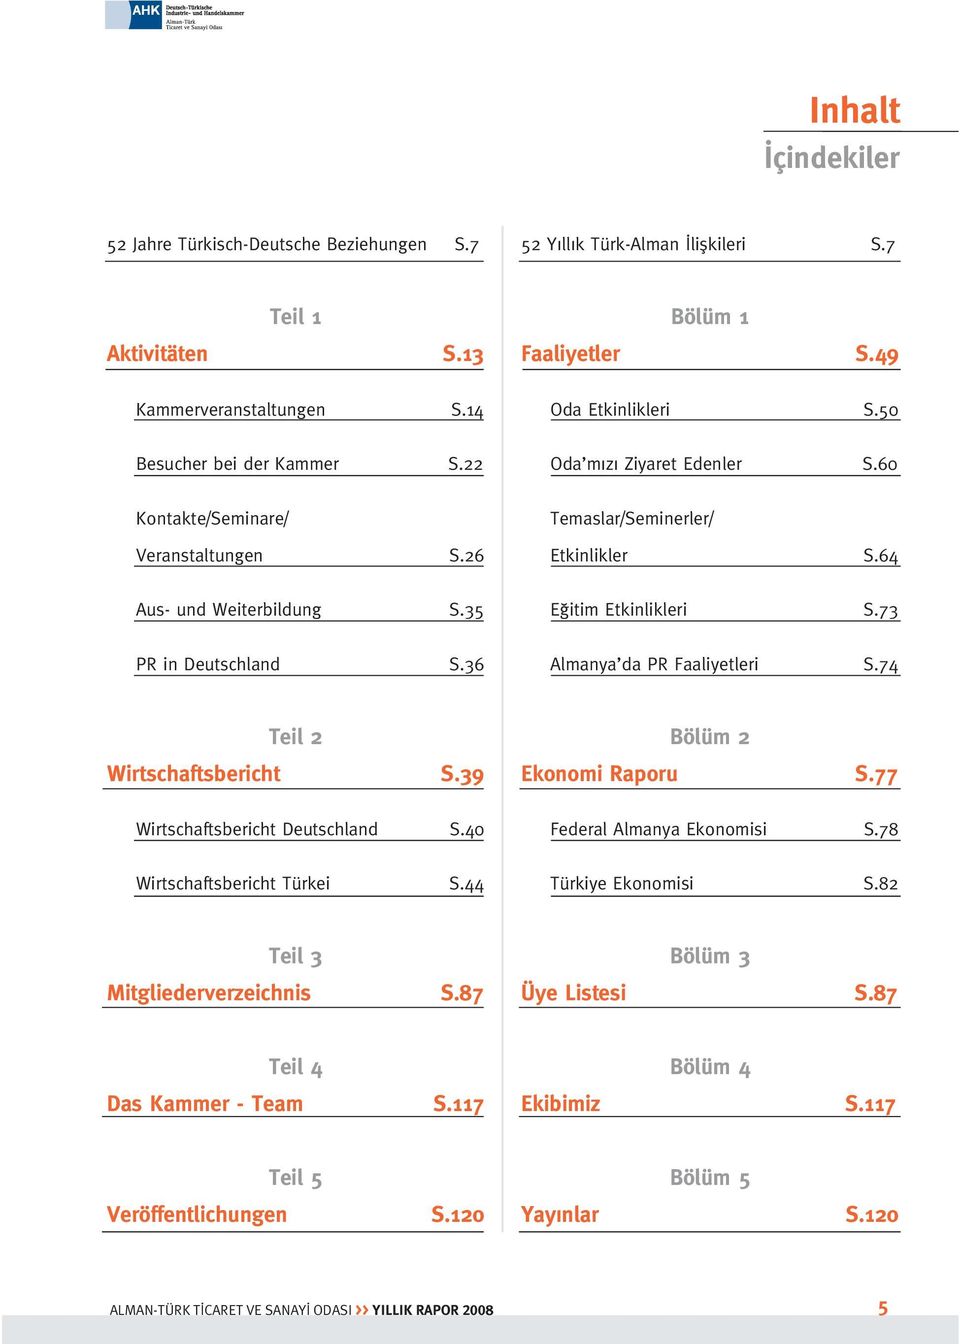 60 Temaslar/Seminerler/ Etkinlikler S.64 E itim Etkinlikleri S.73 Almanya da PR Faaliyetleri S.74 Teil 2 Wirtschaftsbericht S.39 Wirtschaftsbericht Deutschland S.40 Wirtschaftsbericht Türkei S.